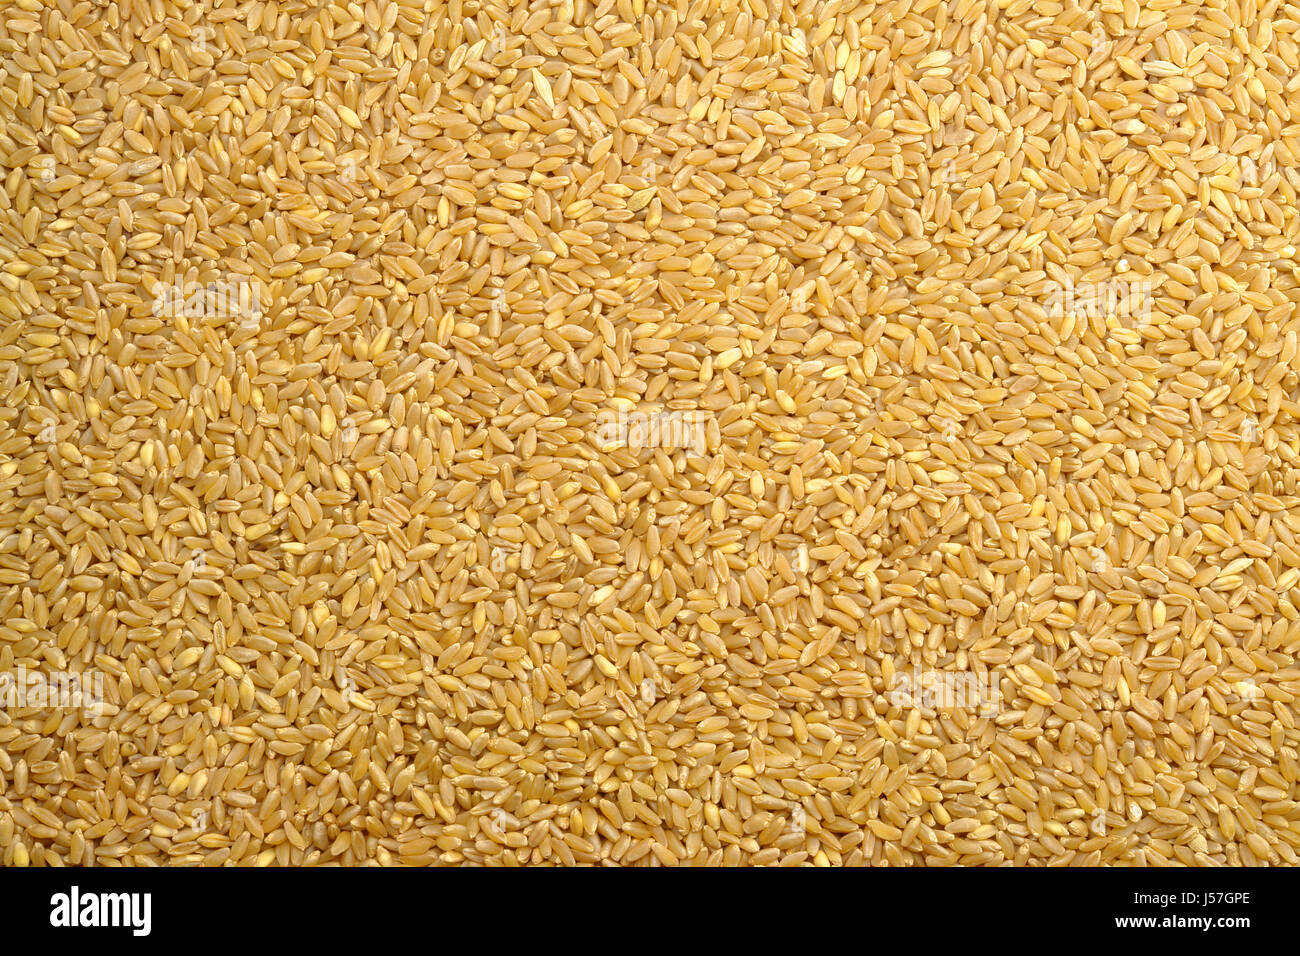 Wheat Grain Texture Stock Photo